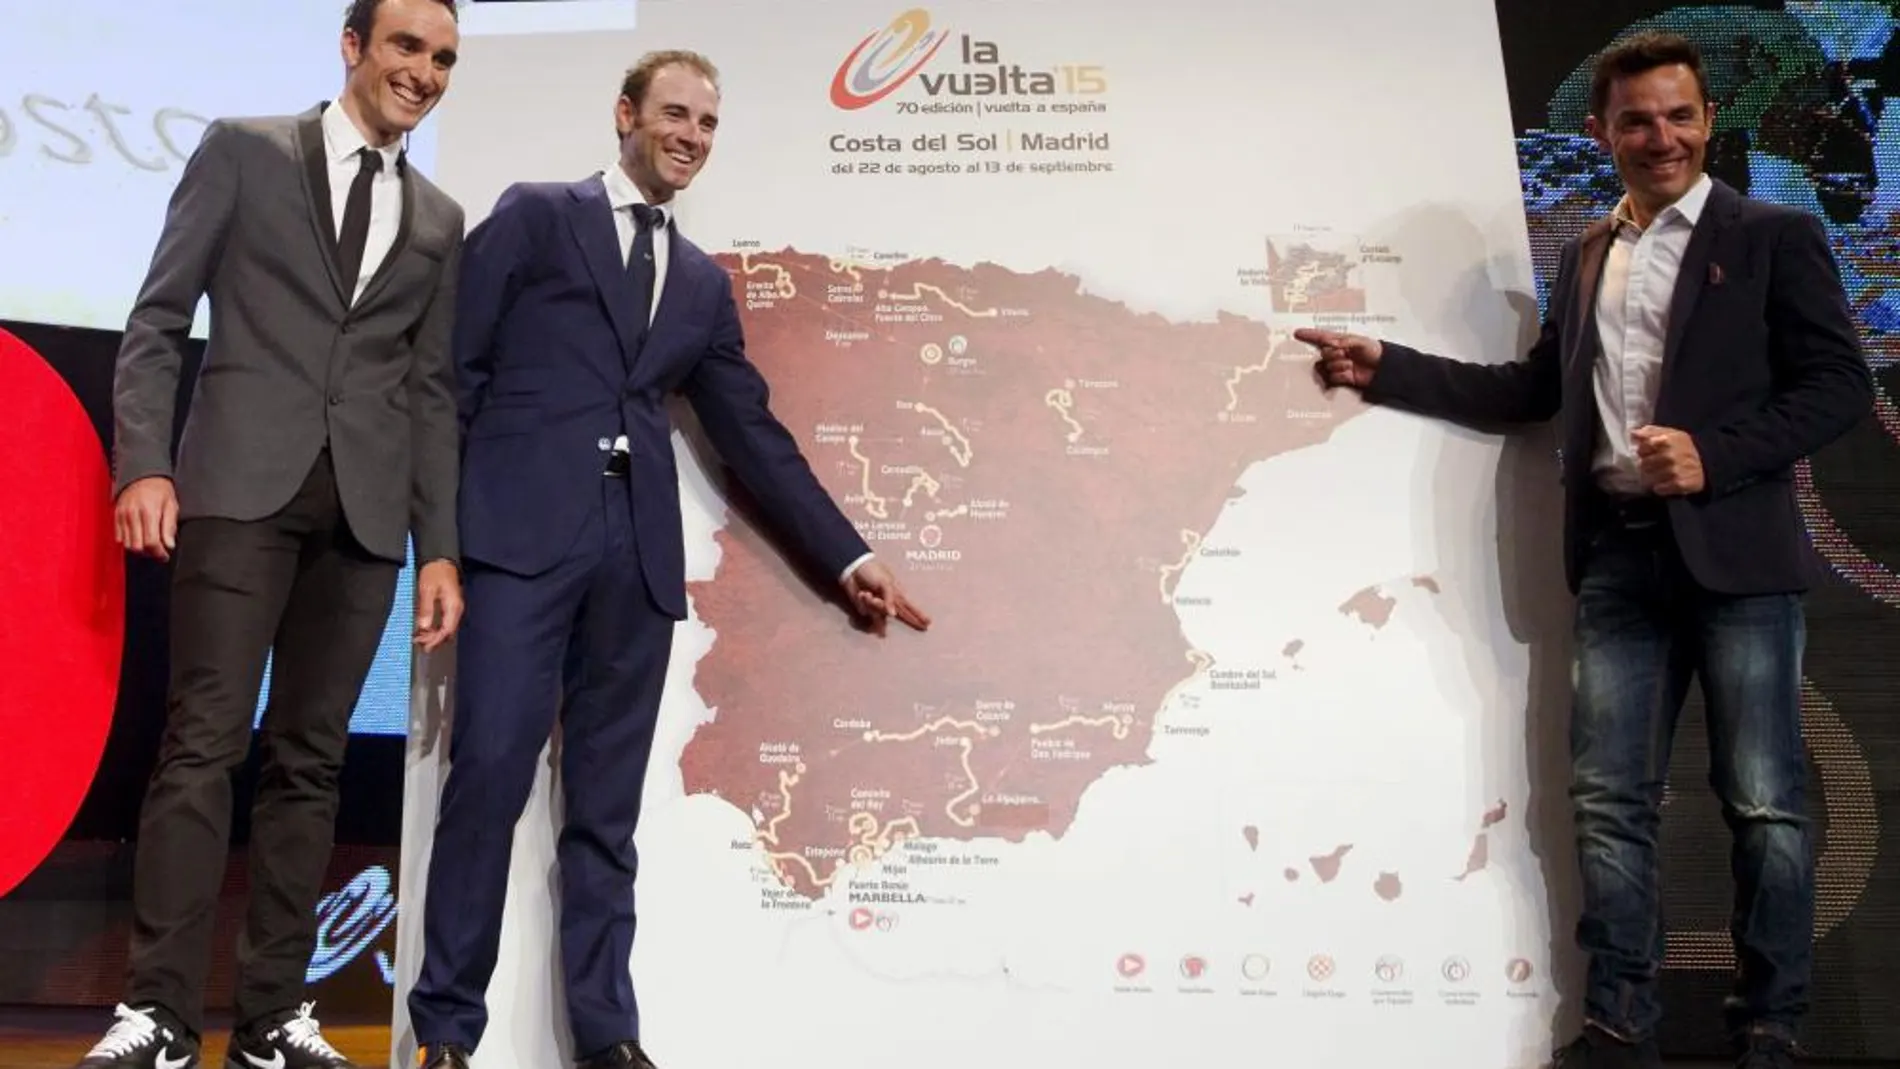 Los ciclistas Luis Ángel Maté (i), Alejandro Valverde (2i) y Joaquín Rodríguez "Purito"(d), posan con un mapa, durante la ceremonia de presentacións del recorrido de la Vuelta a España 2015.